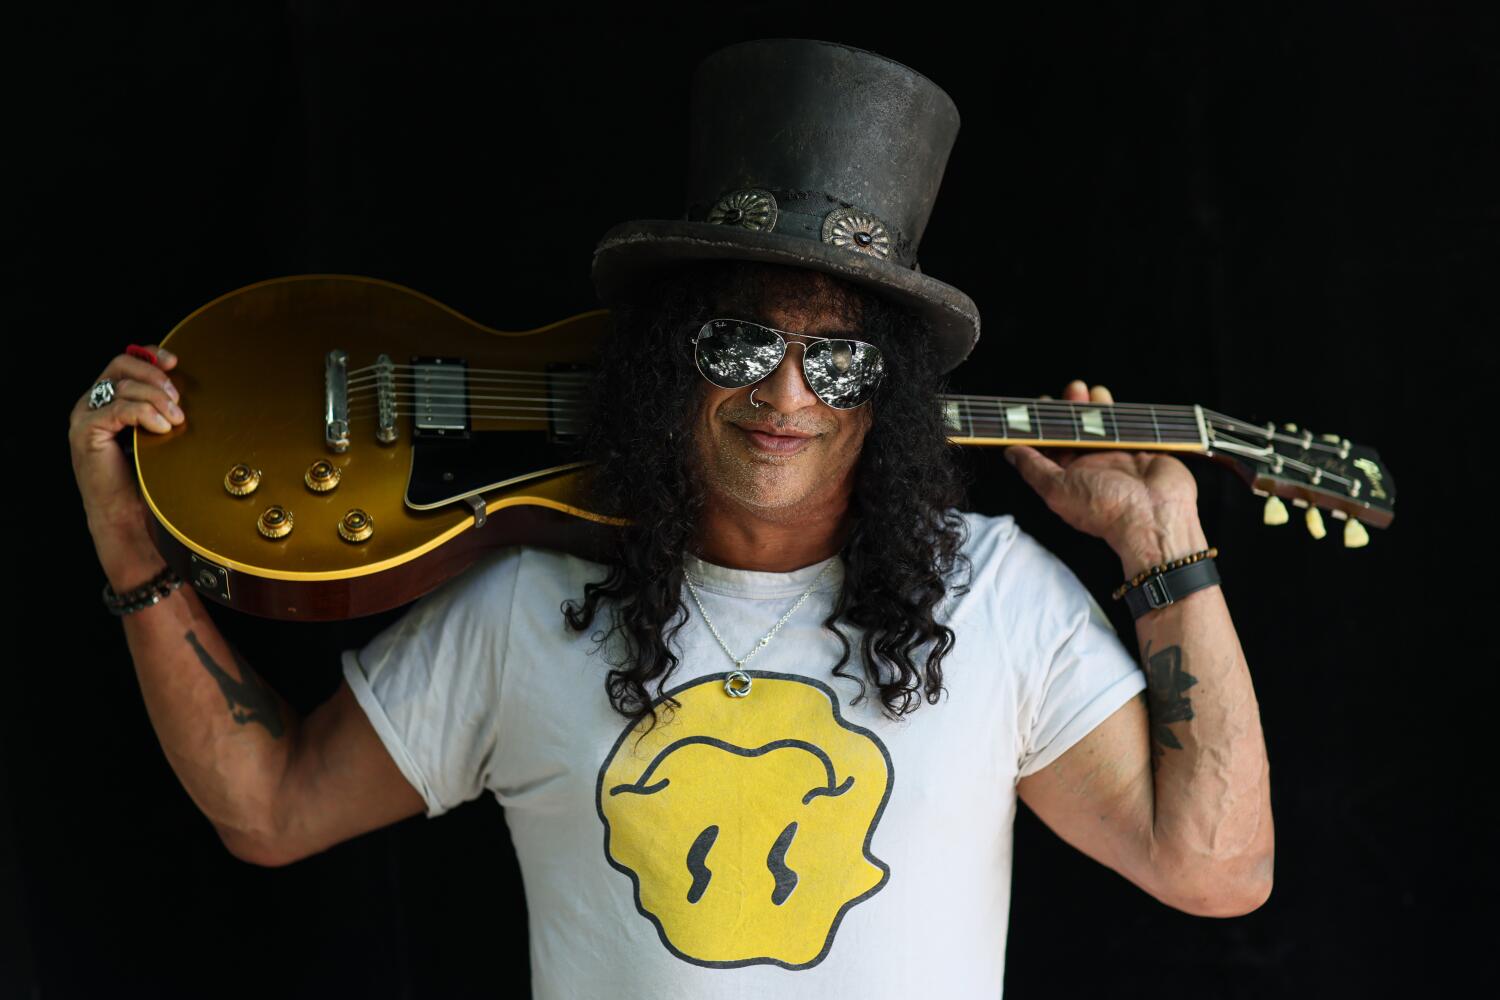 Slash is one of hard rock's guitar heroes. He's still got the blues